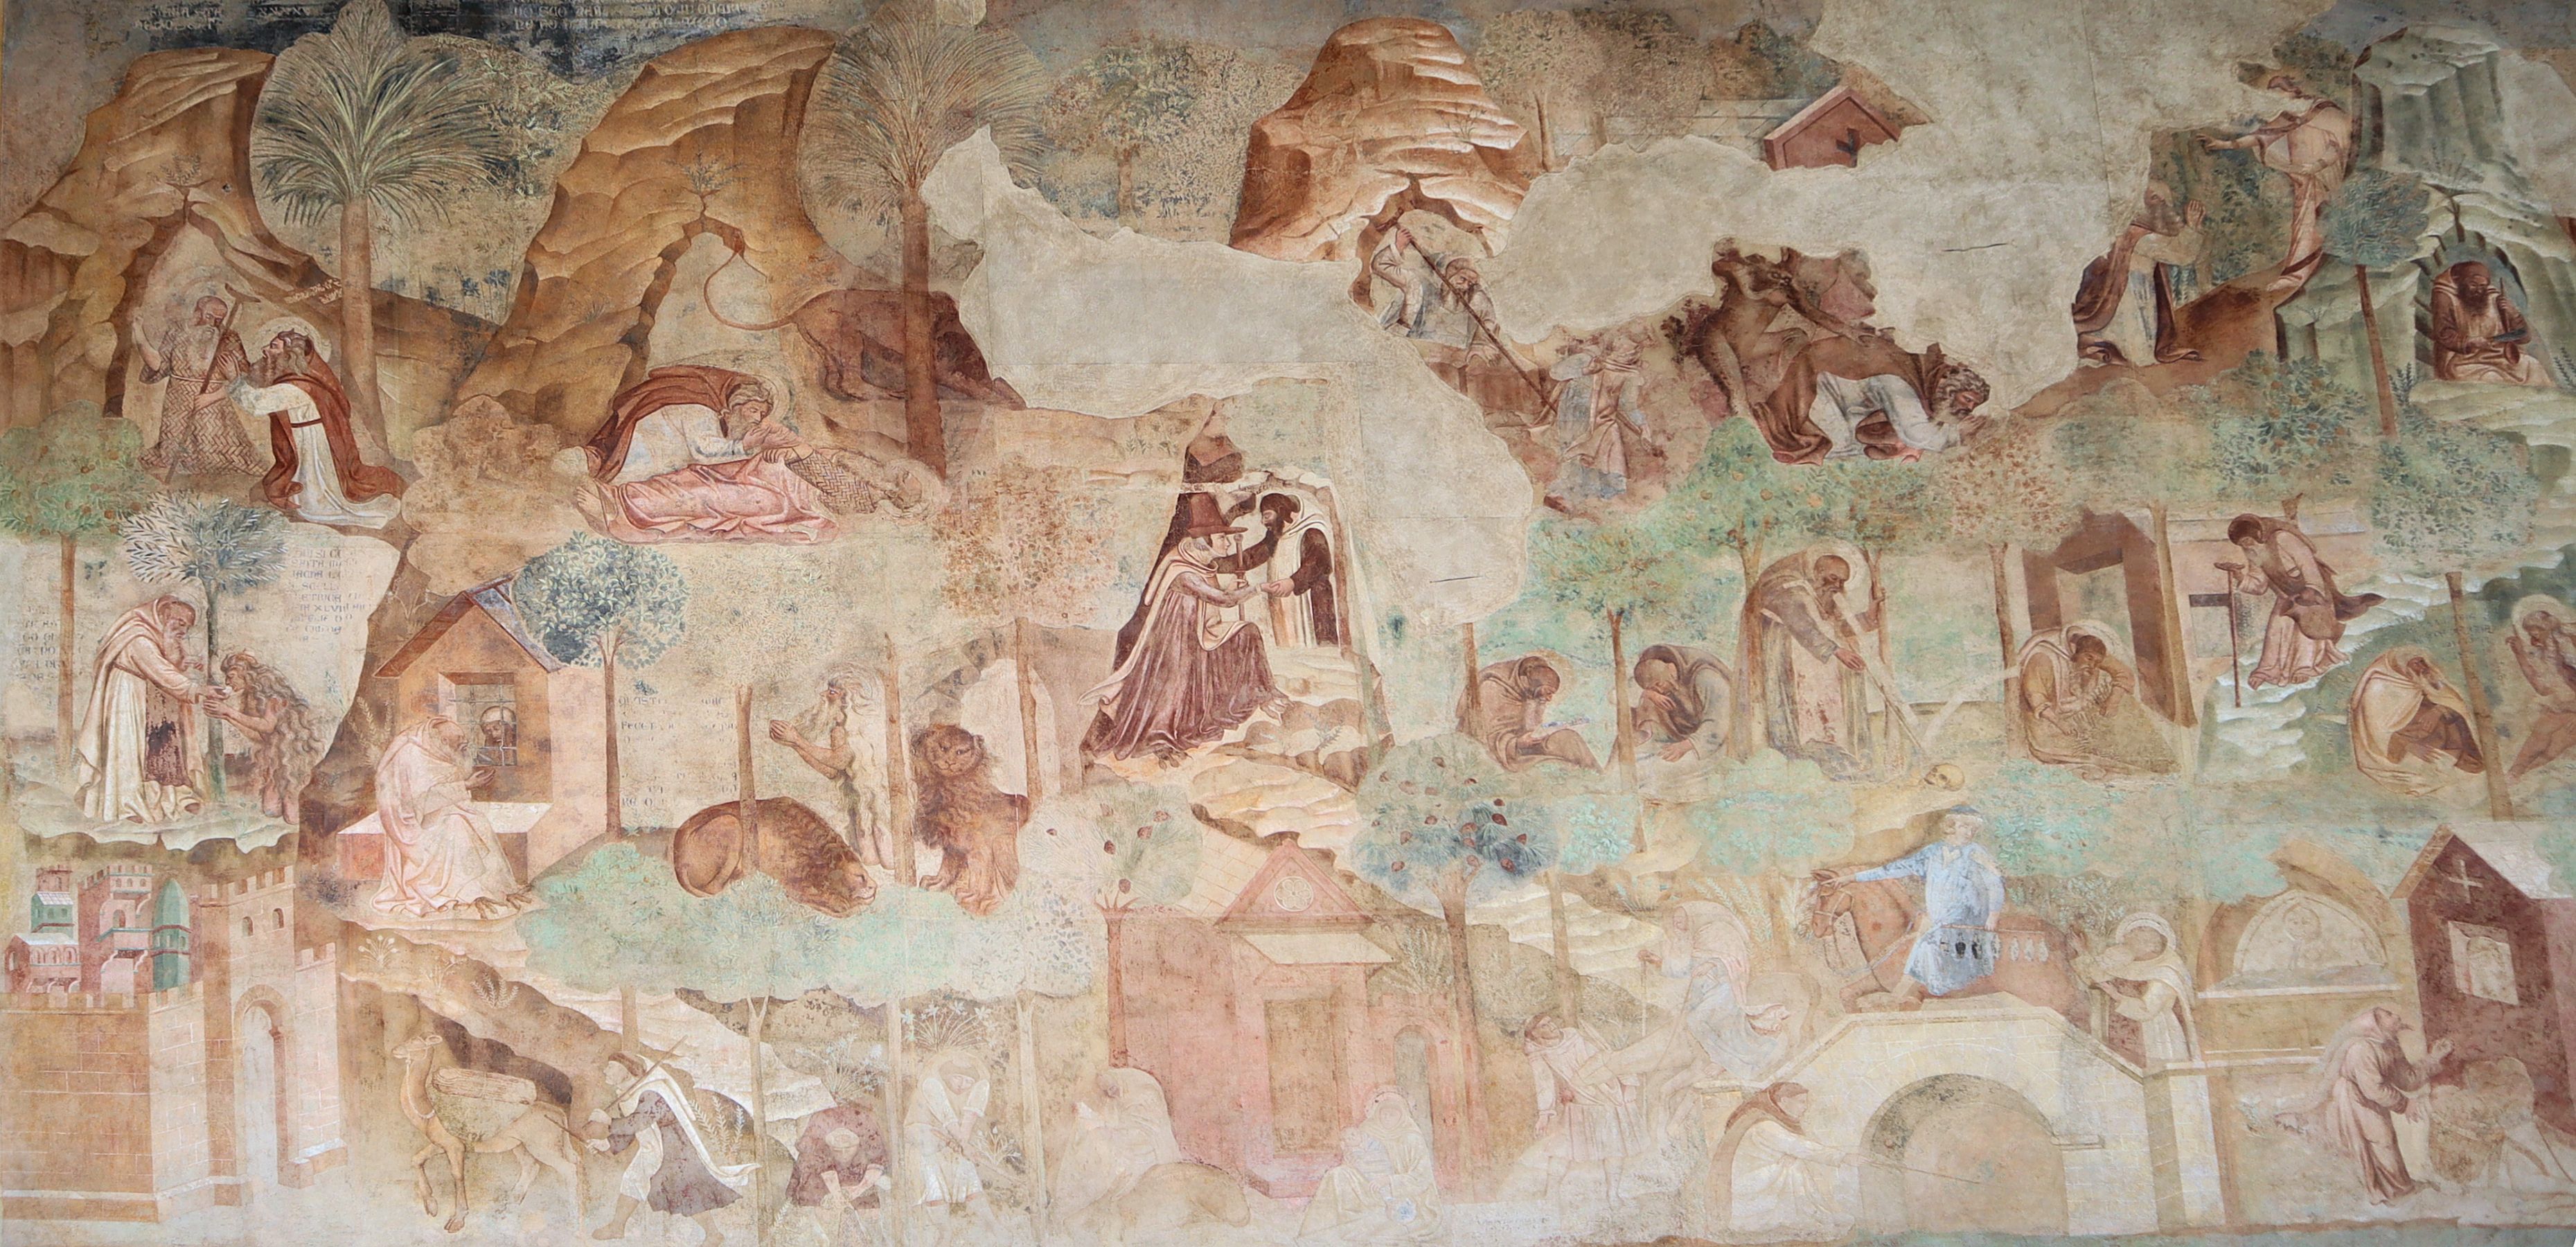 Buonamico Buffalmacco: Das Leben der Wüstenväter, Fresko, um 1336, in den Arkaden des Campo Santo in Pisa